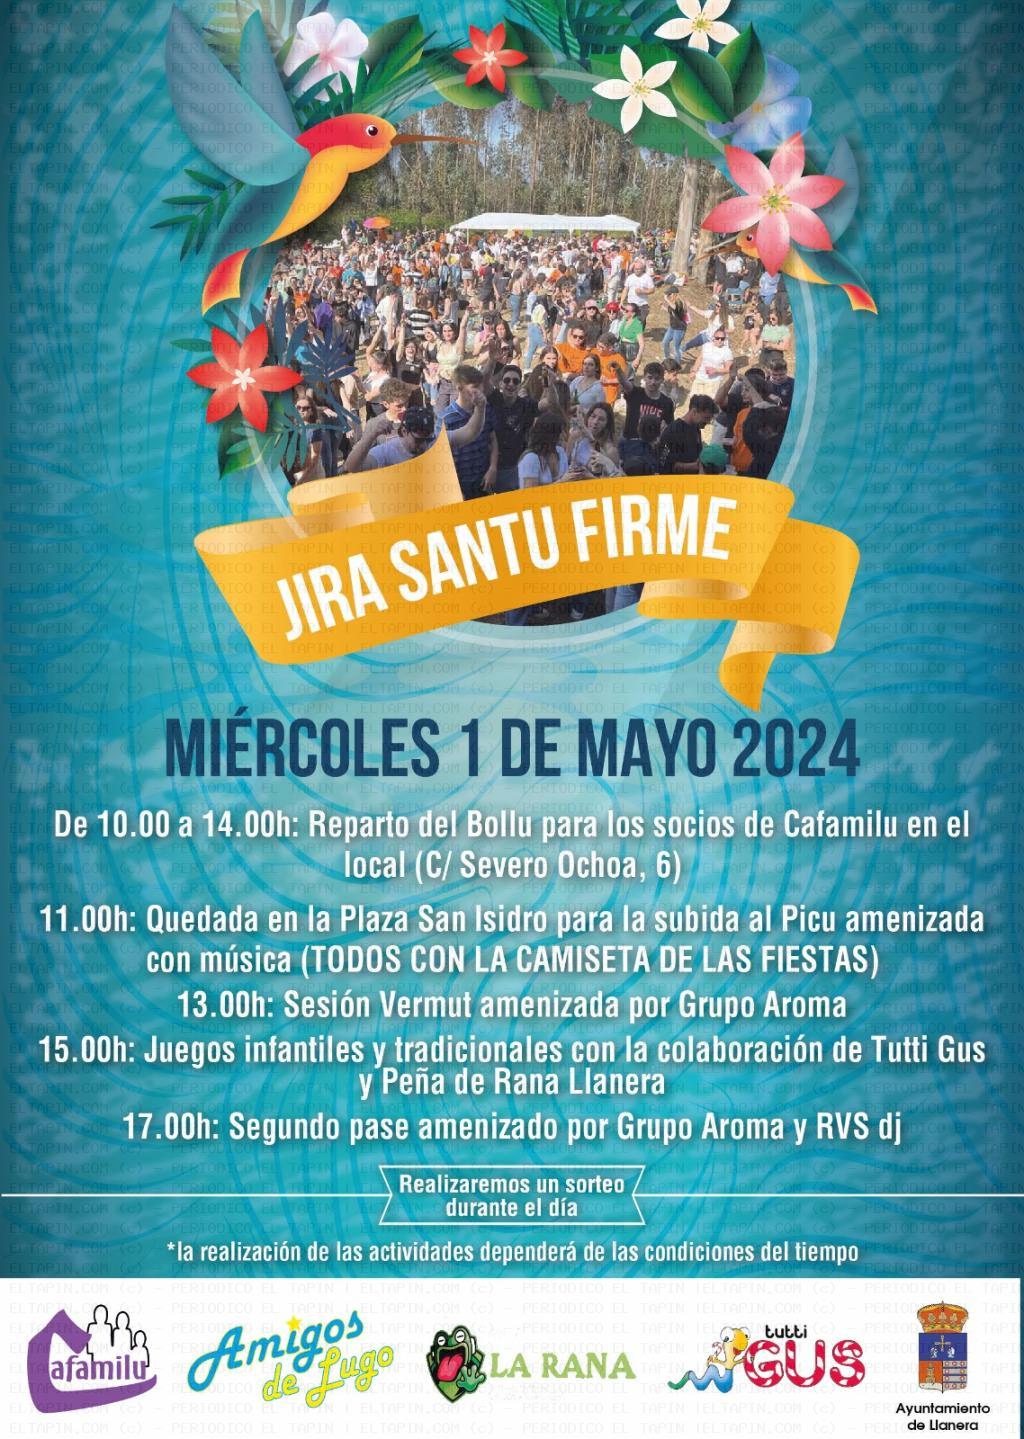 El Tapin - Lugo de Llanera celebrará su tradicional Jira Santu Firme el 1 de mayo